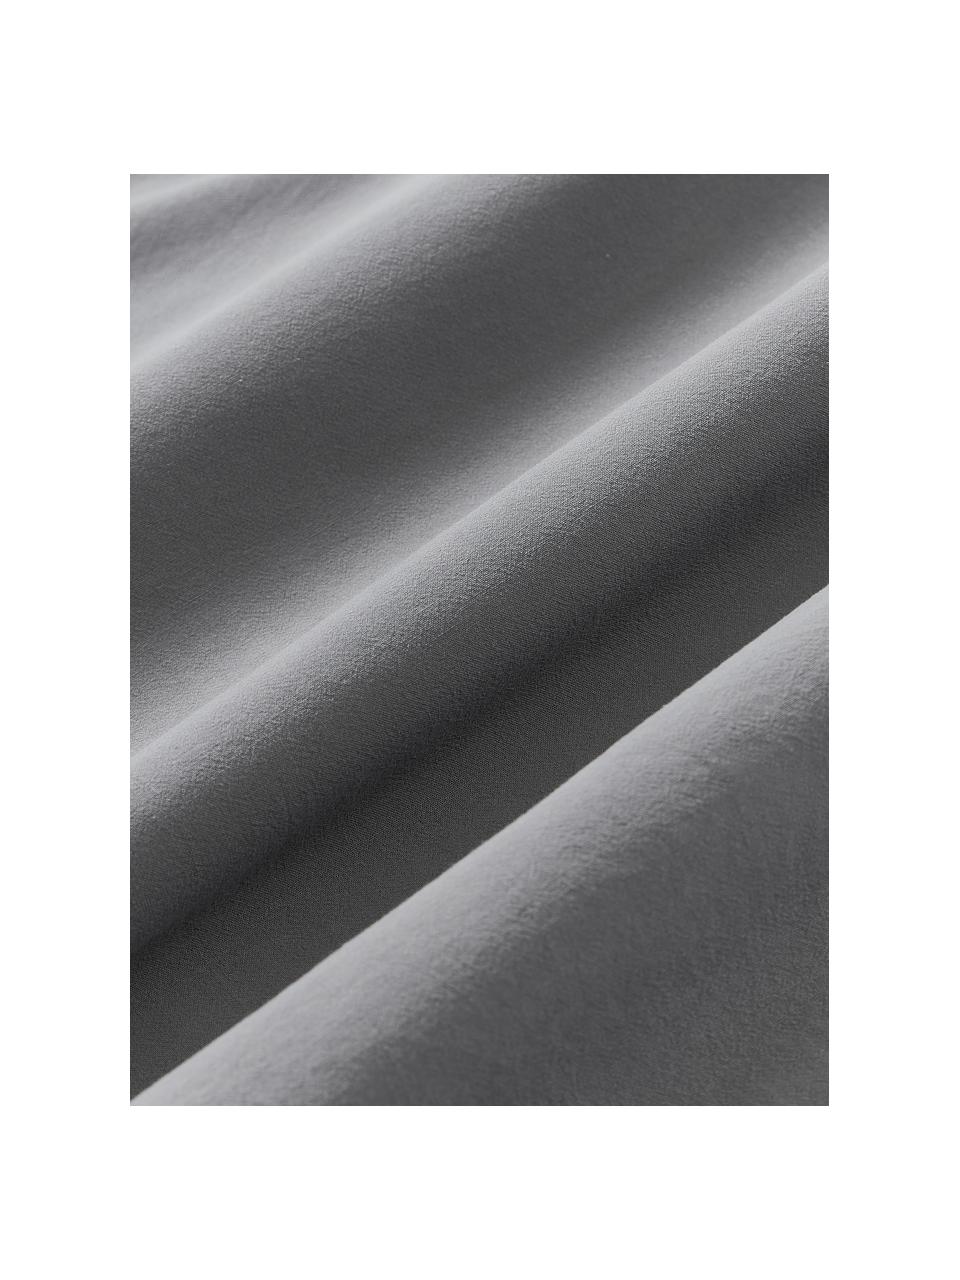 Bavlnená obliečka na vankúš Darlyn, 100 %  bavlna
Hustota vlákna 150 TC, štandard kvalita

Posteľná bielizeň z bavlny je príjemná na dotyk, dobre absorbuje vlhkosť a je vhodná pre alergikov

Látka bola podrobená špeciálnemu procesu „Softwash”, ktorý zabezpečuje nepravidelný vypraný vzhľad, je mäkká, pružná a má prirodzený krčivý vzhľad, ktorý nevyžaduje žehlenie a pôsobí útulne

Materiál použitý v tomto produkte bol testovaný na škodlivé látky a certifikovaný podľa STANDARD 100 od OEKO-TEX®, 4265CIT, CITEVE., Tmavosivá, Š 200 x D 200 cm